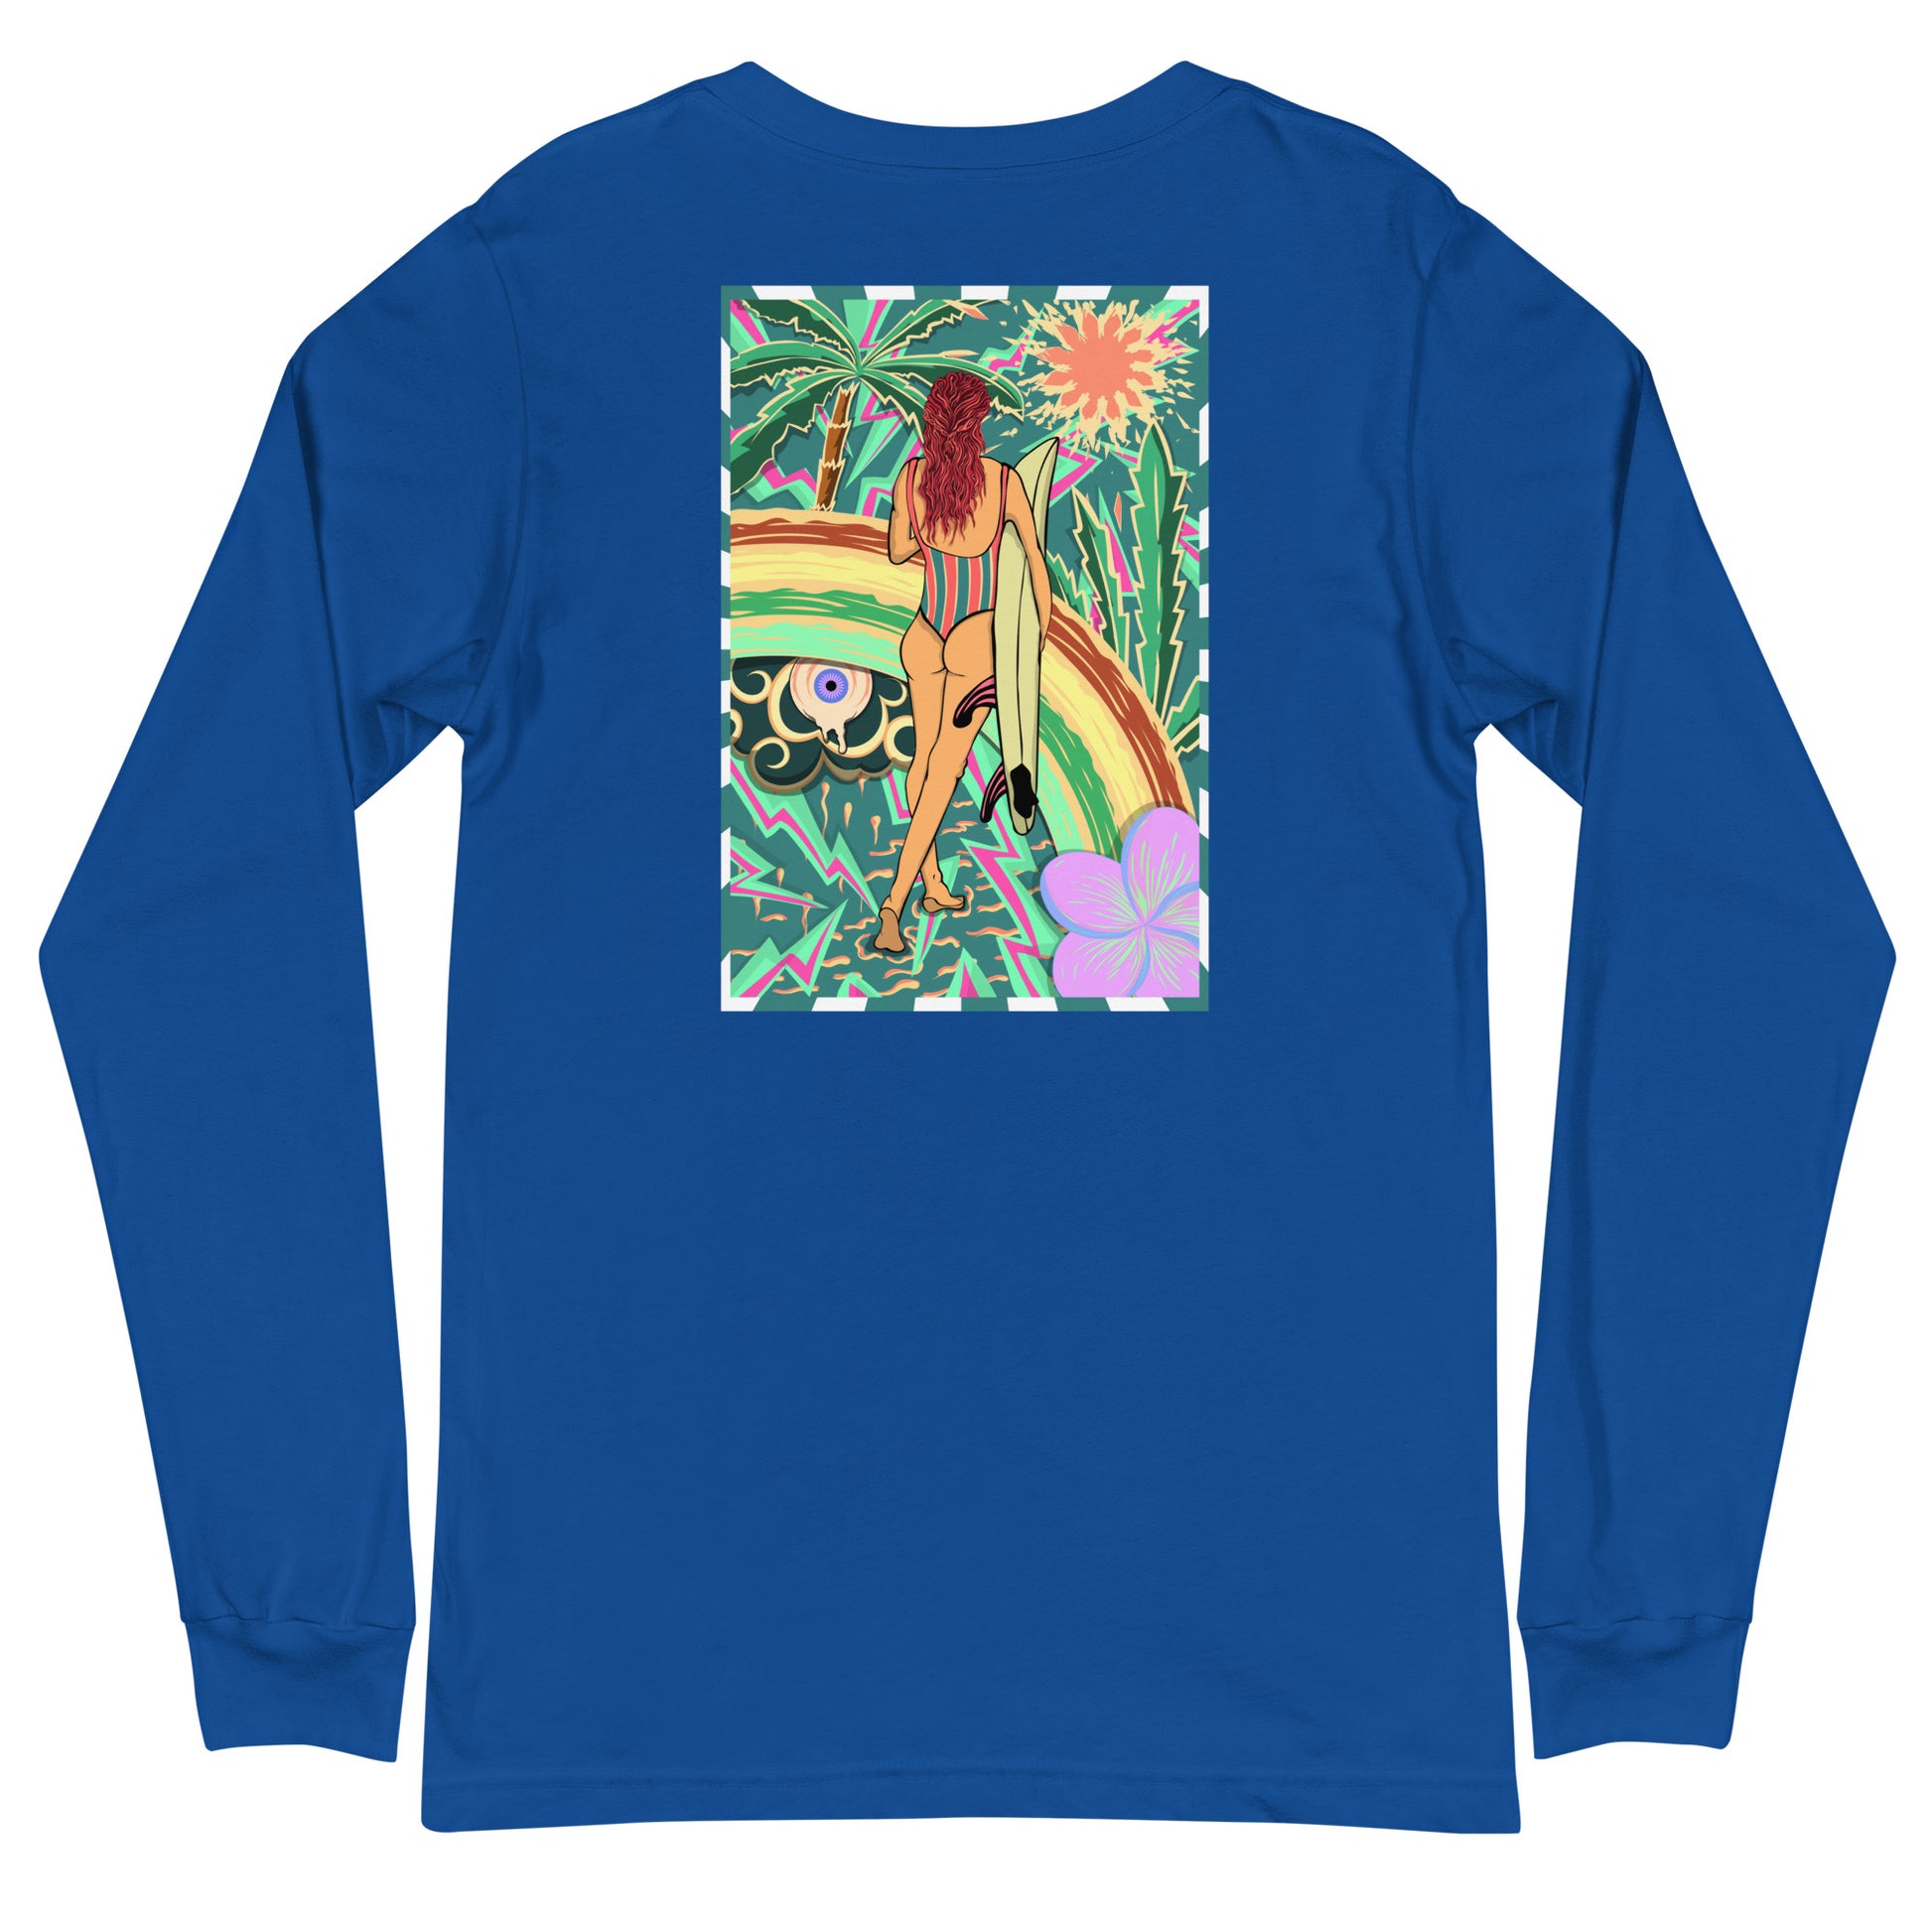 Long Sleeve vintage volcom psychédélique style Walk Of Life surfeuse, unisex, dos, couleur bleu royal